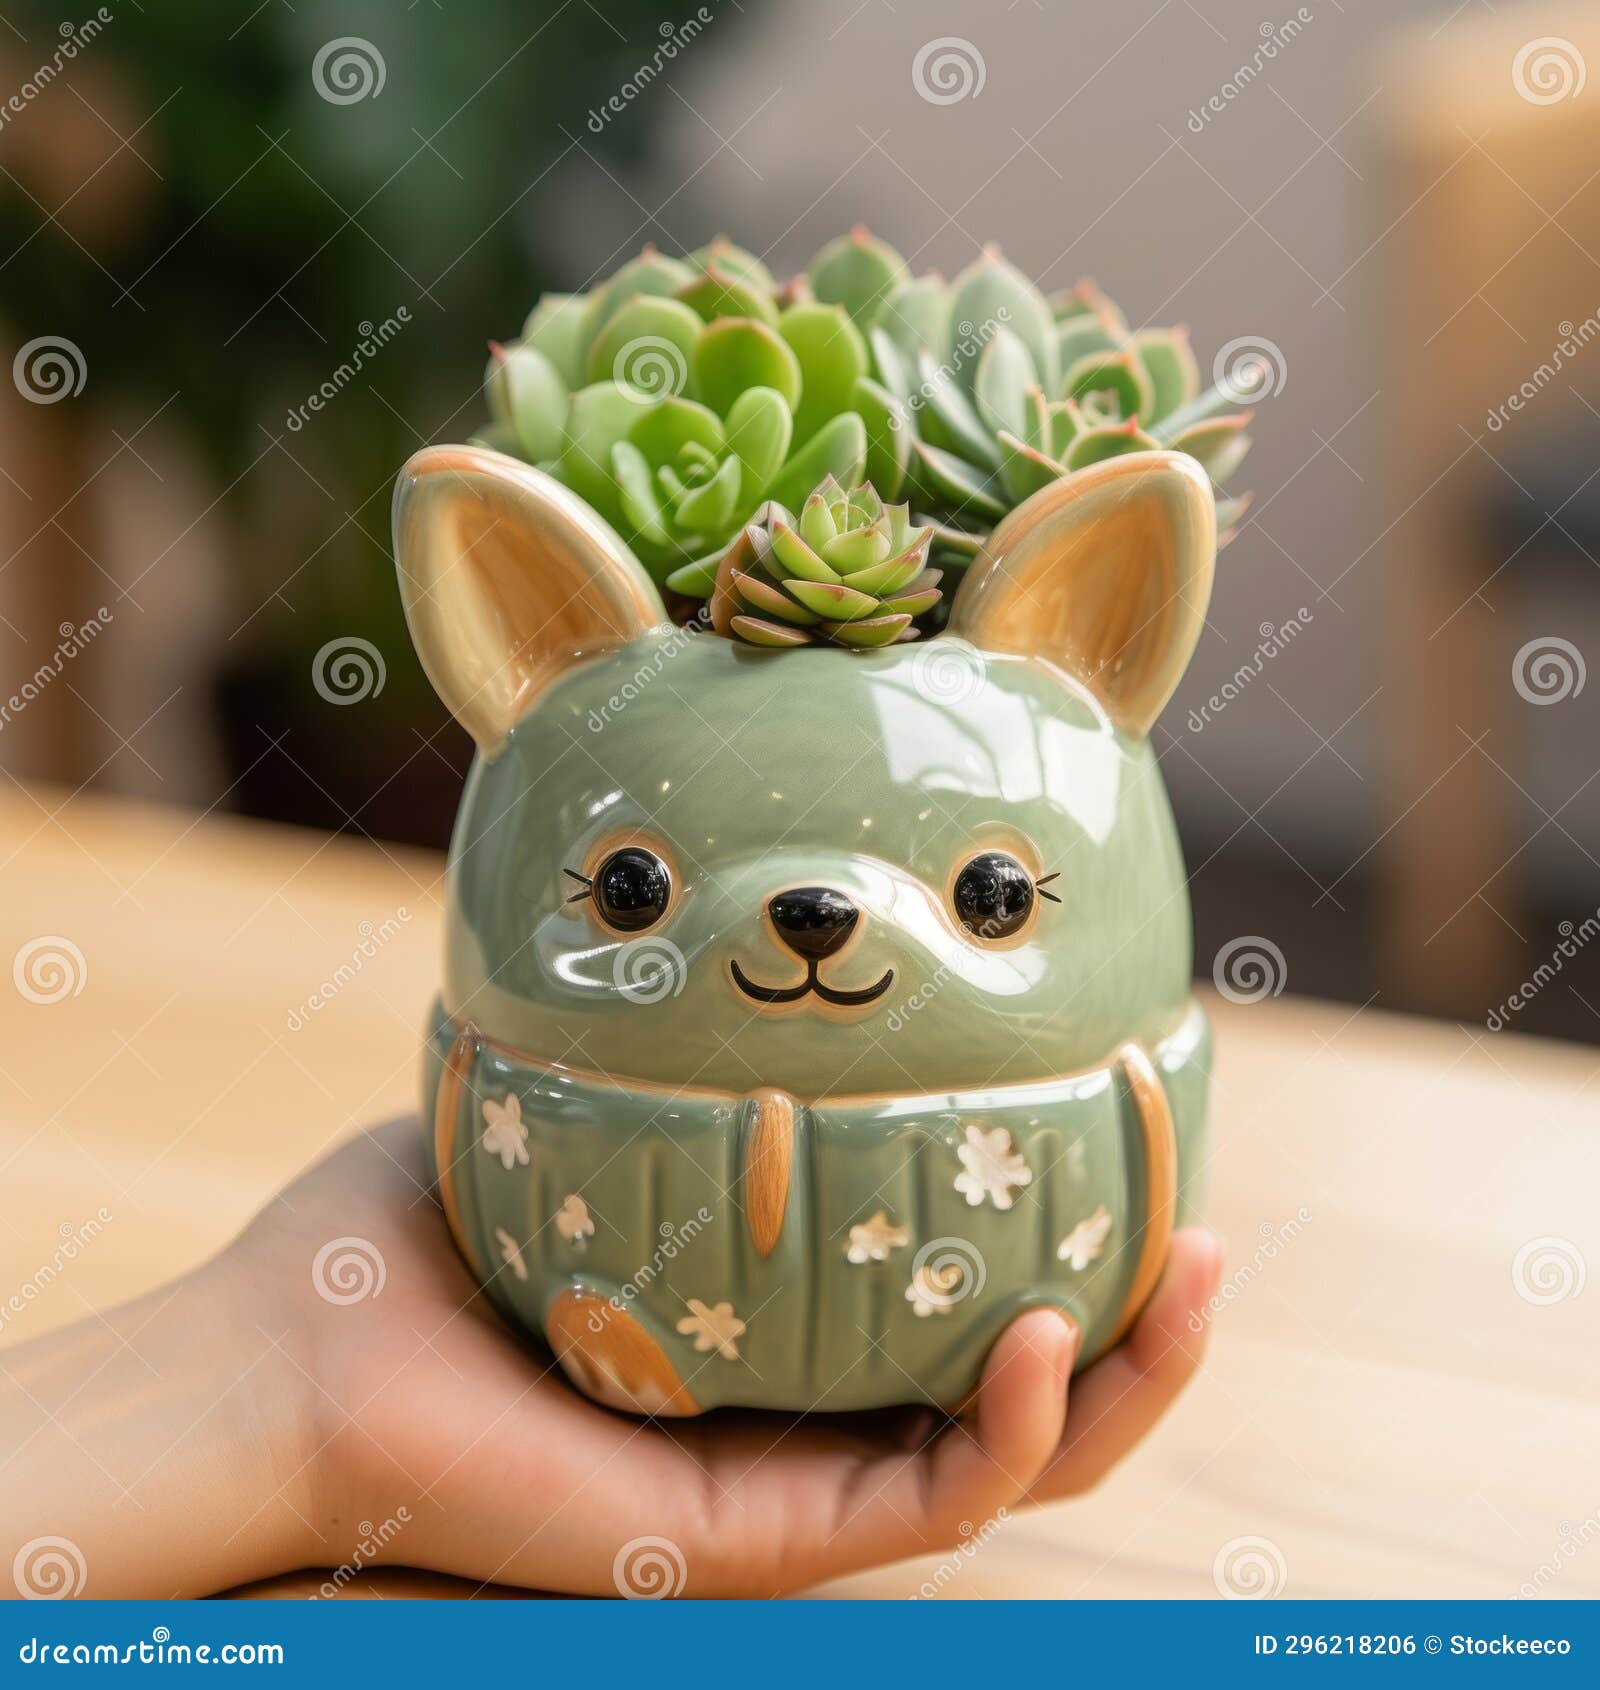 cute green bear-d succulent pot: caninecore inspired handmade 